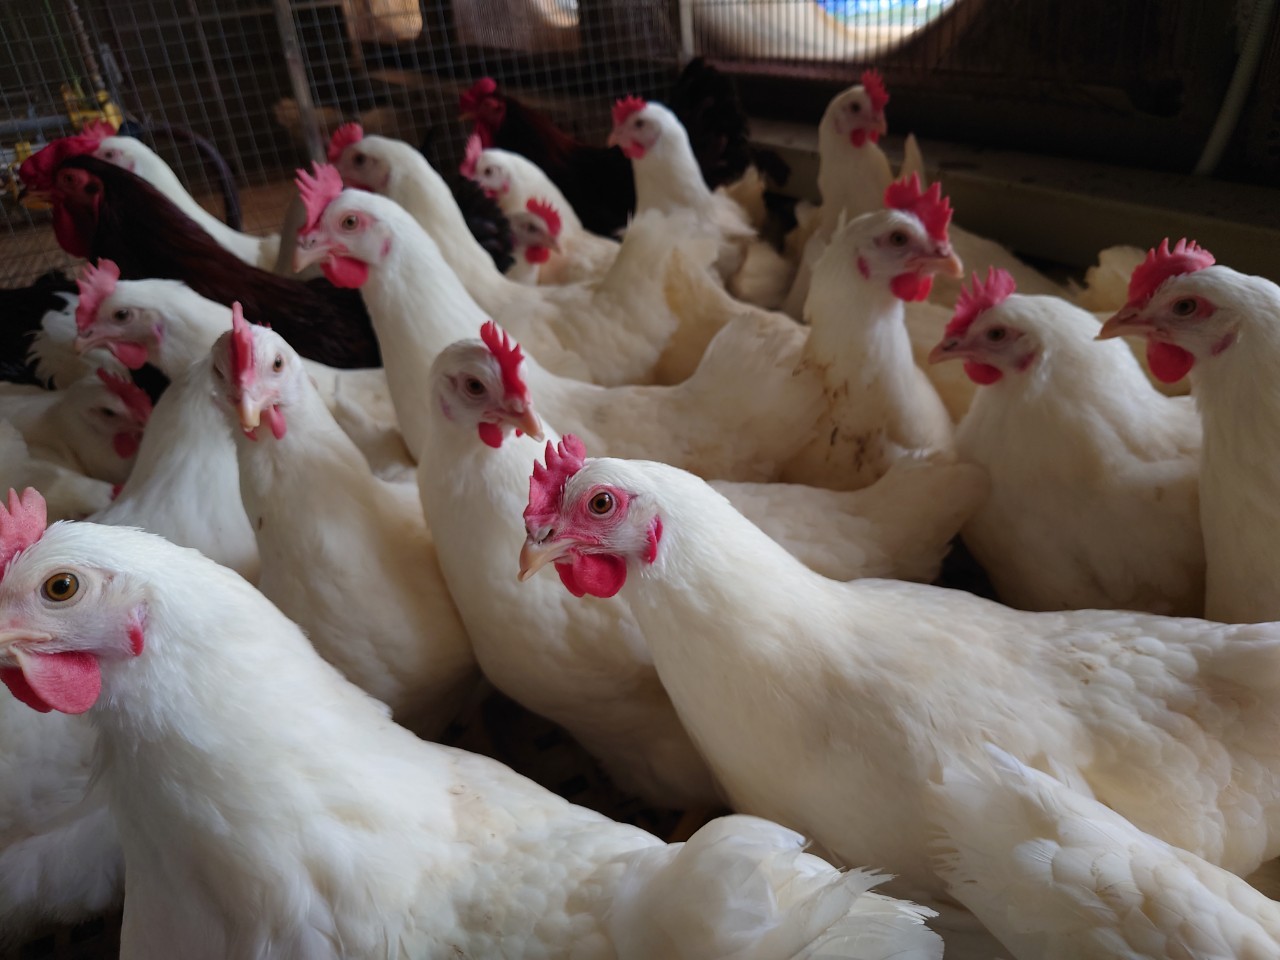 Bán thép lỗ, Hòa Phát bán thêm giống gà đẻ trứng hồng nhập từ Mỹ - Ảnh 1.